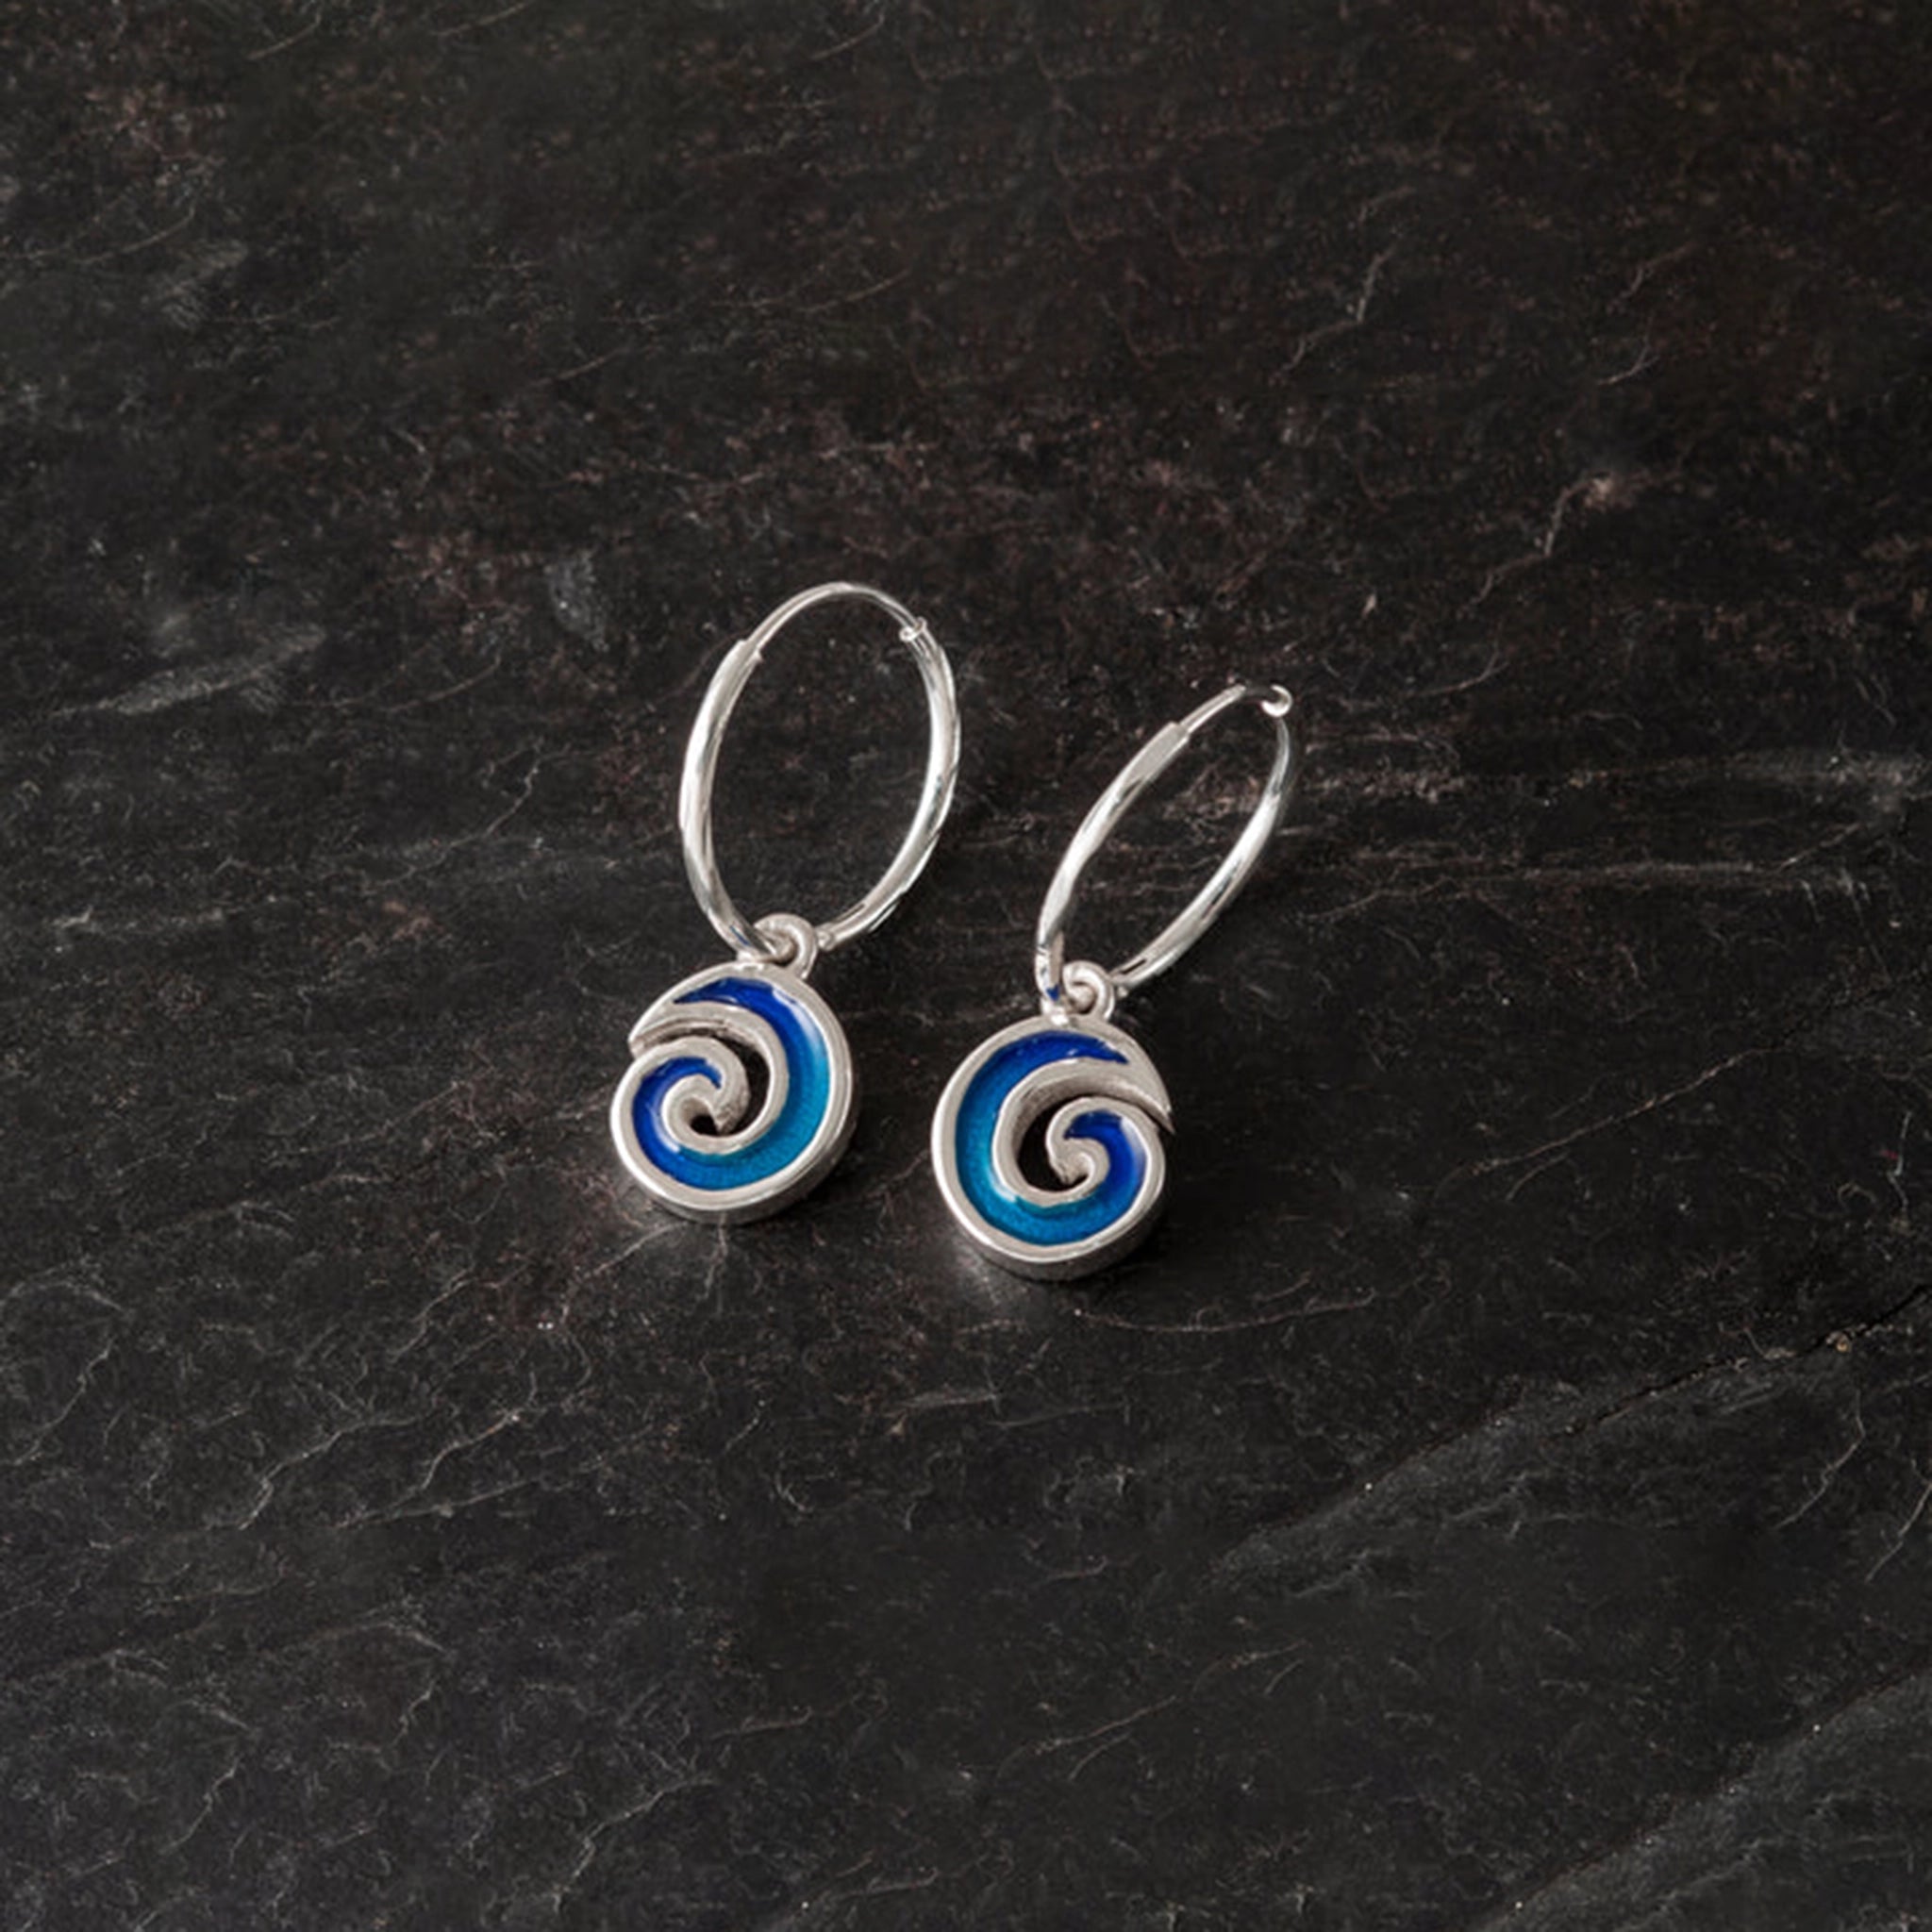 Silver hoop earrings with blue enamel wave shaped drop pendants